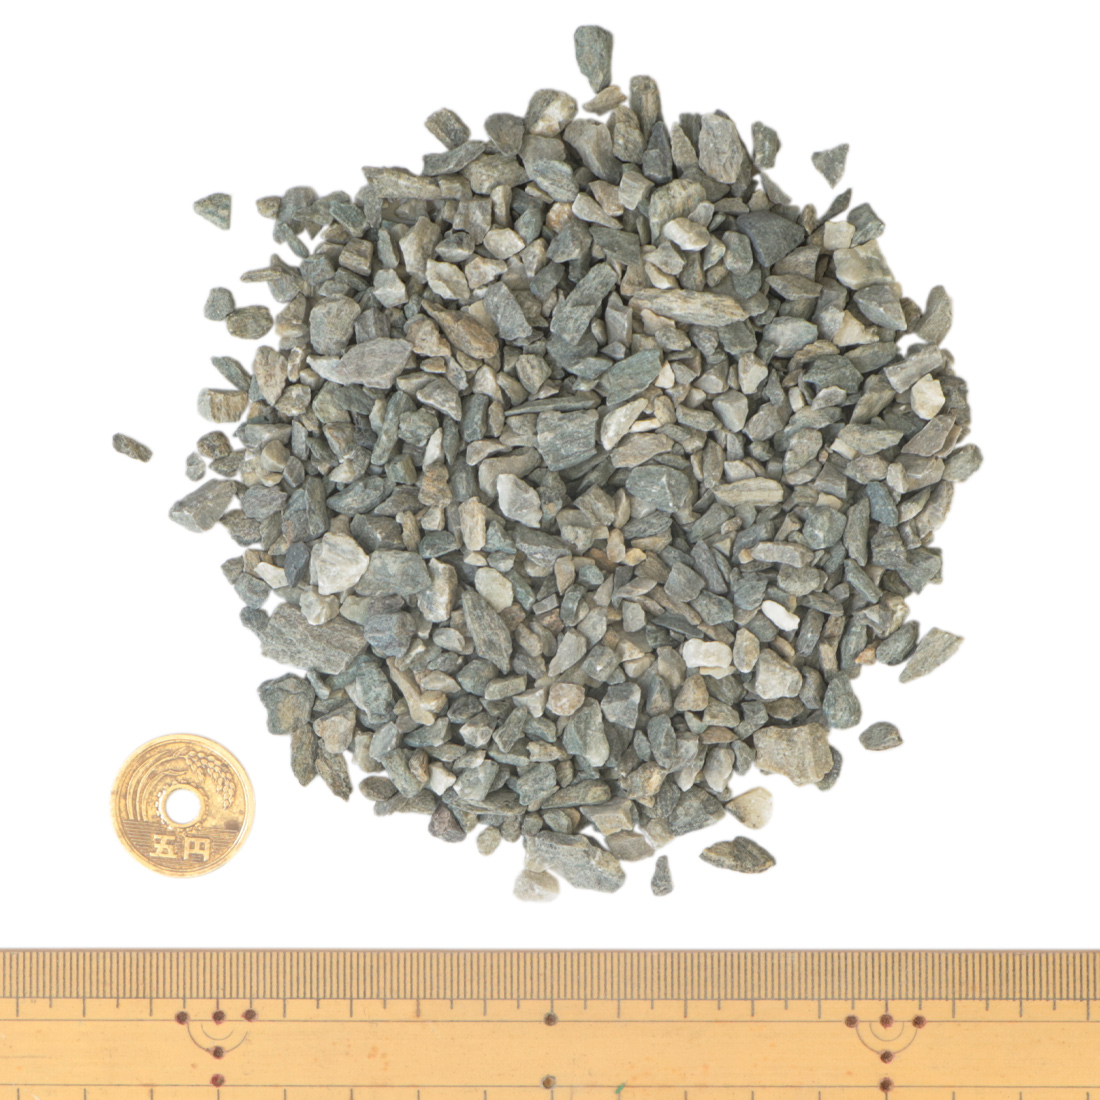 ミックスカラー砕石 2.5-5mm (7号砕石) 20kg